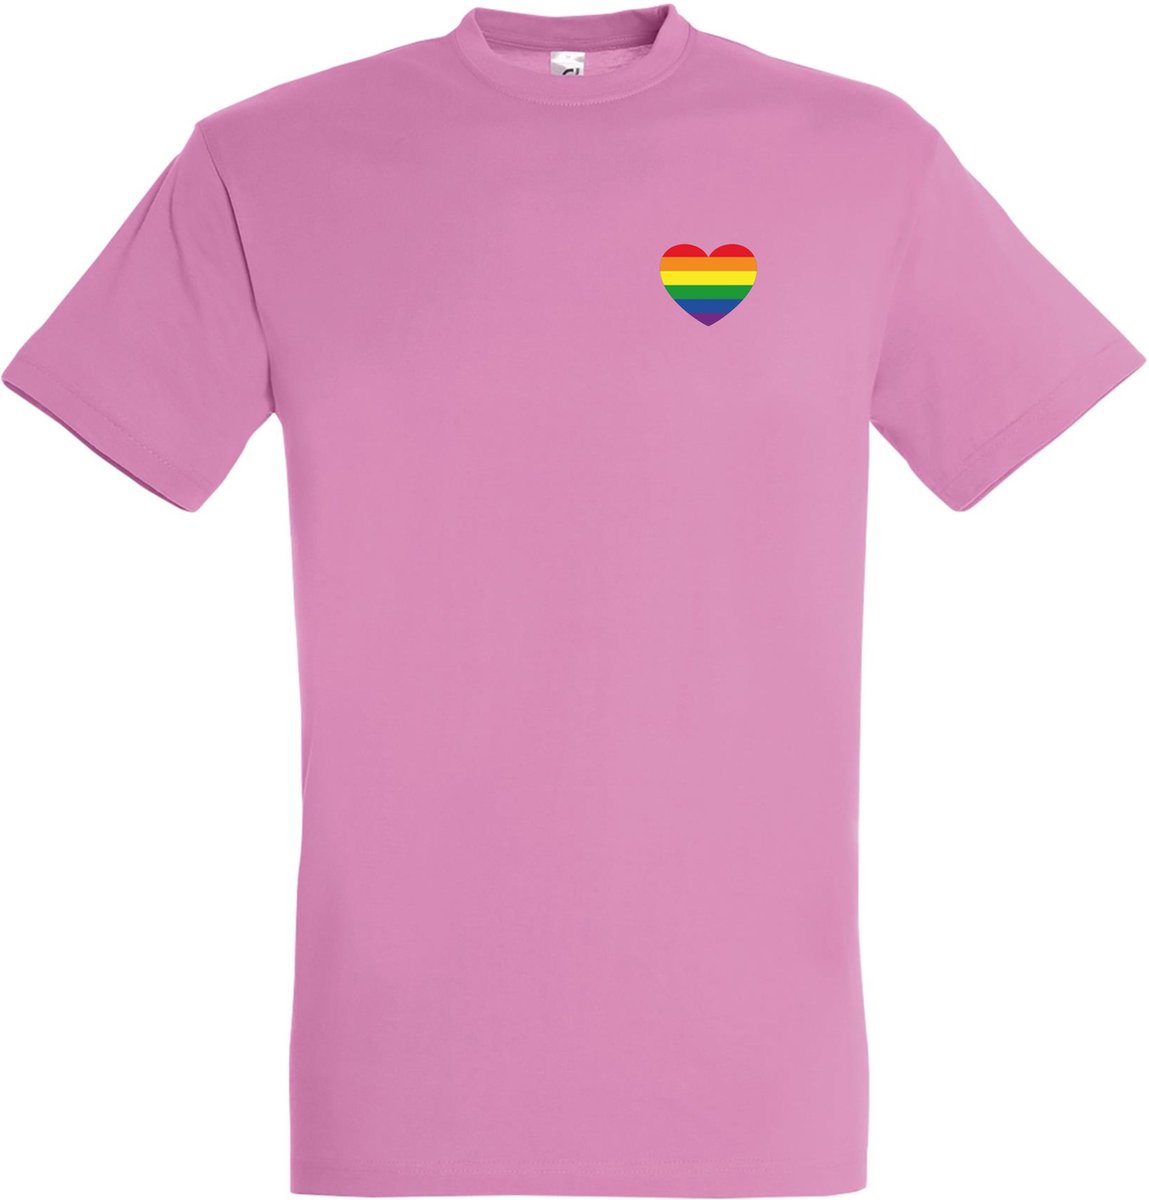 T-shirt Regenboog hartje | Regenboog vlag | Gay pride kleding | Pride shirt | Roze | maat L